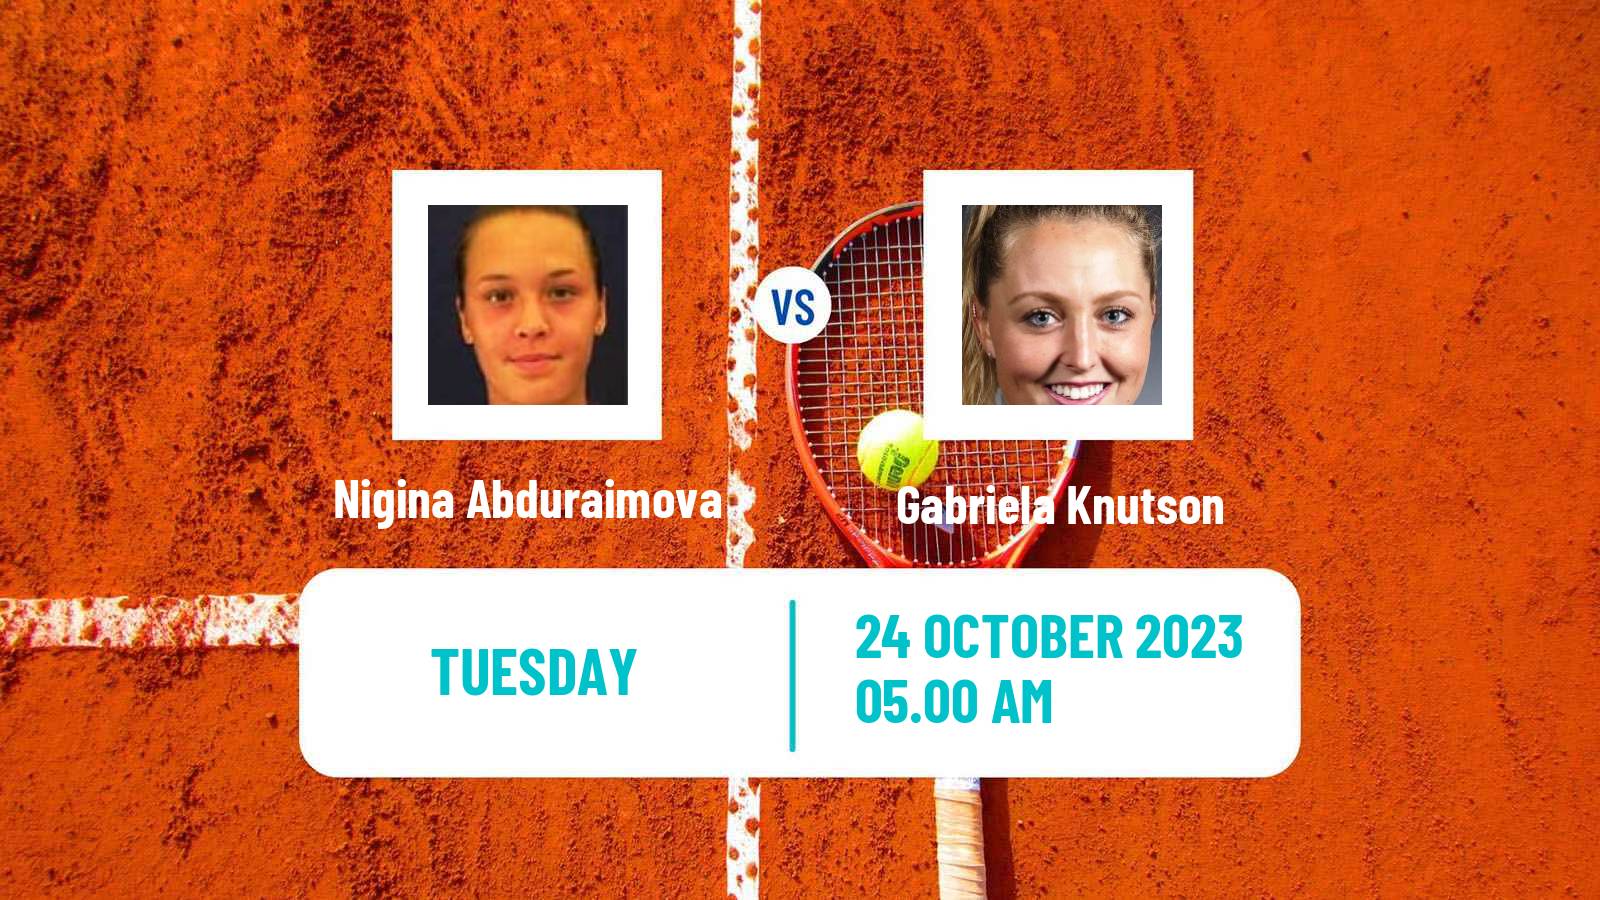 Tennis ITF W60 Glasgow Women Nigina Abduraimova - Gabriela Knutson